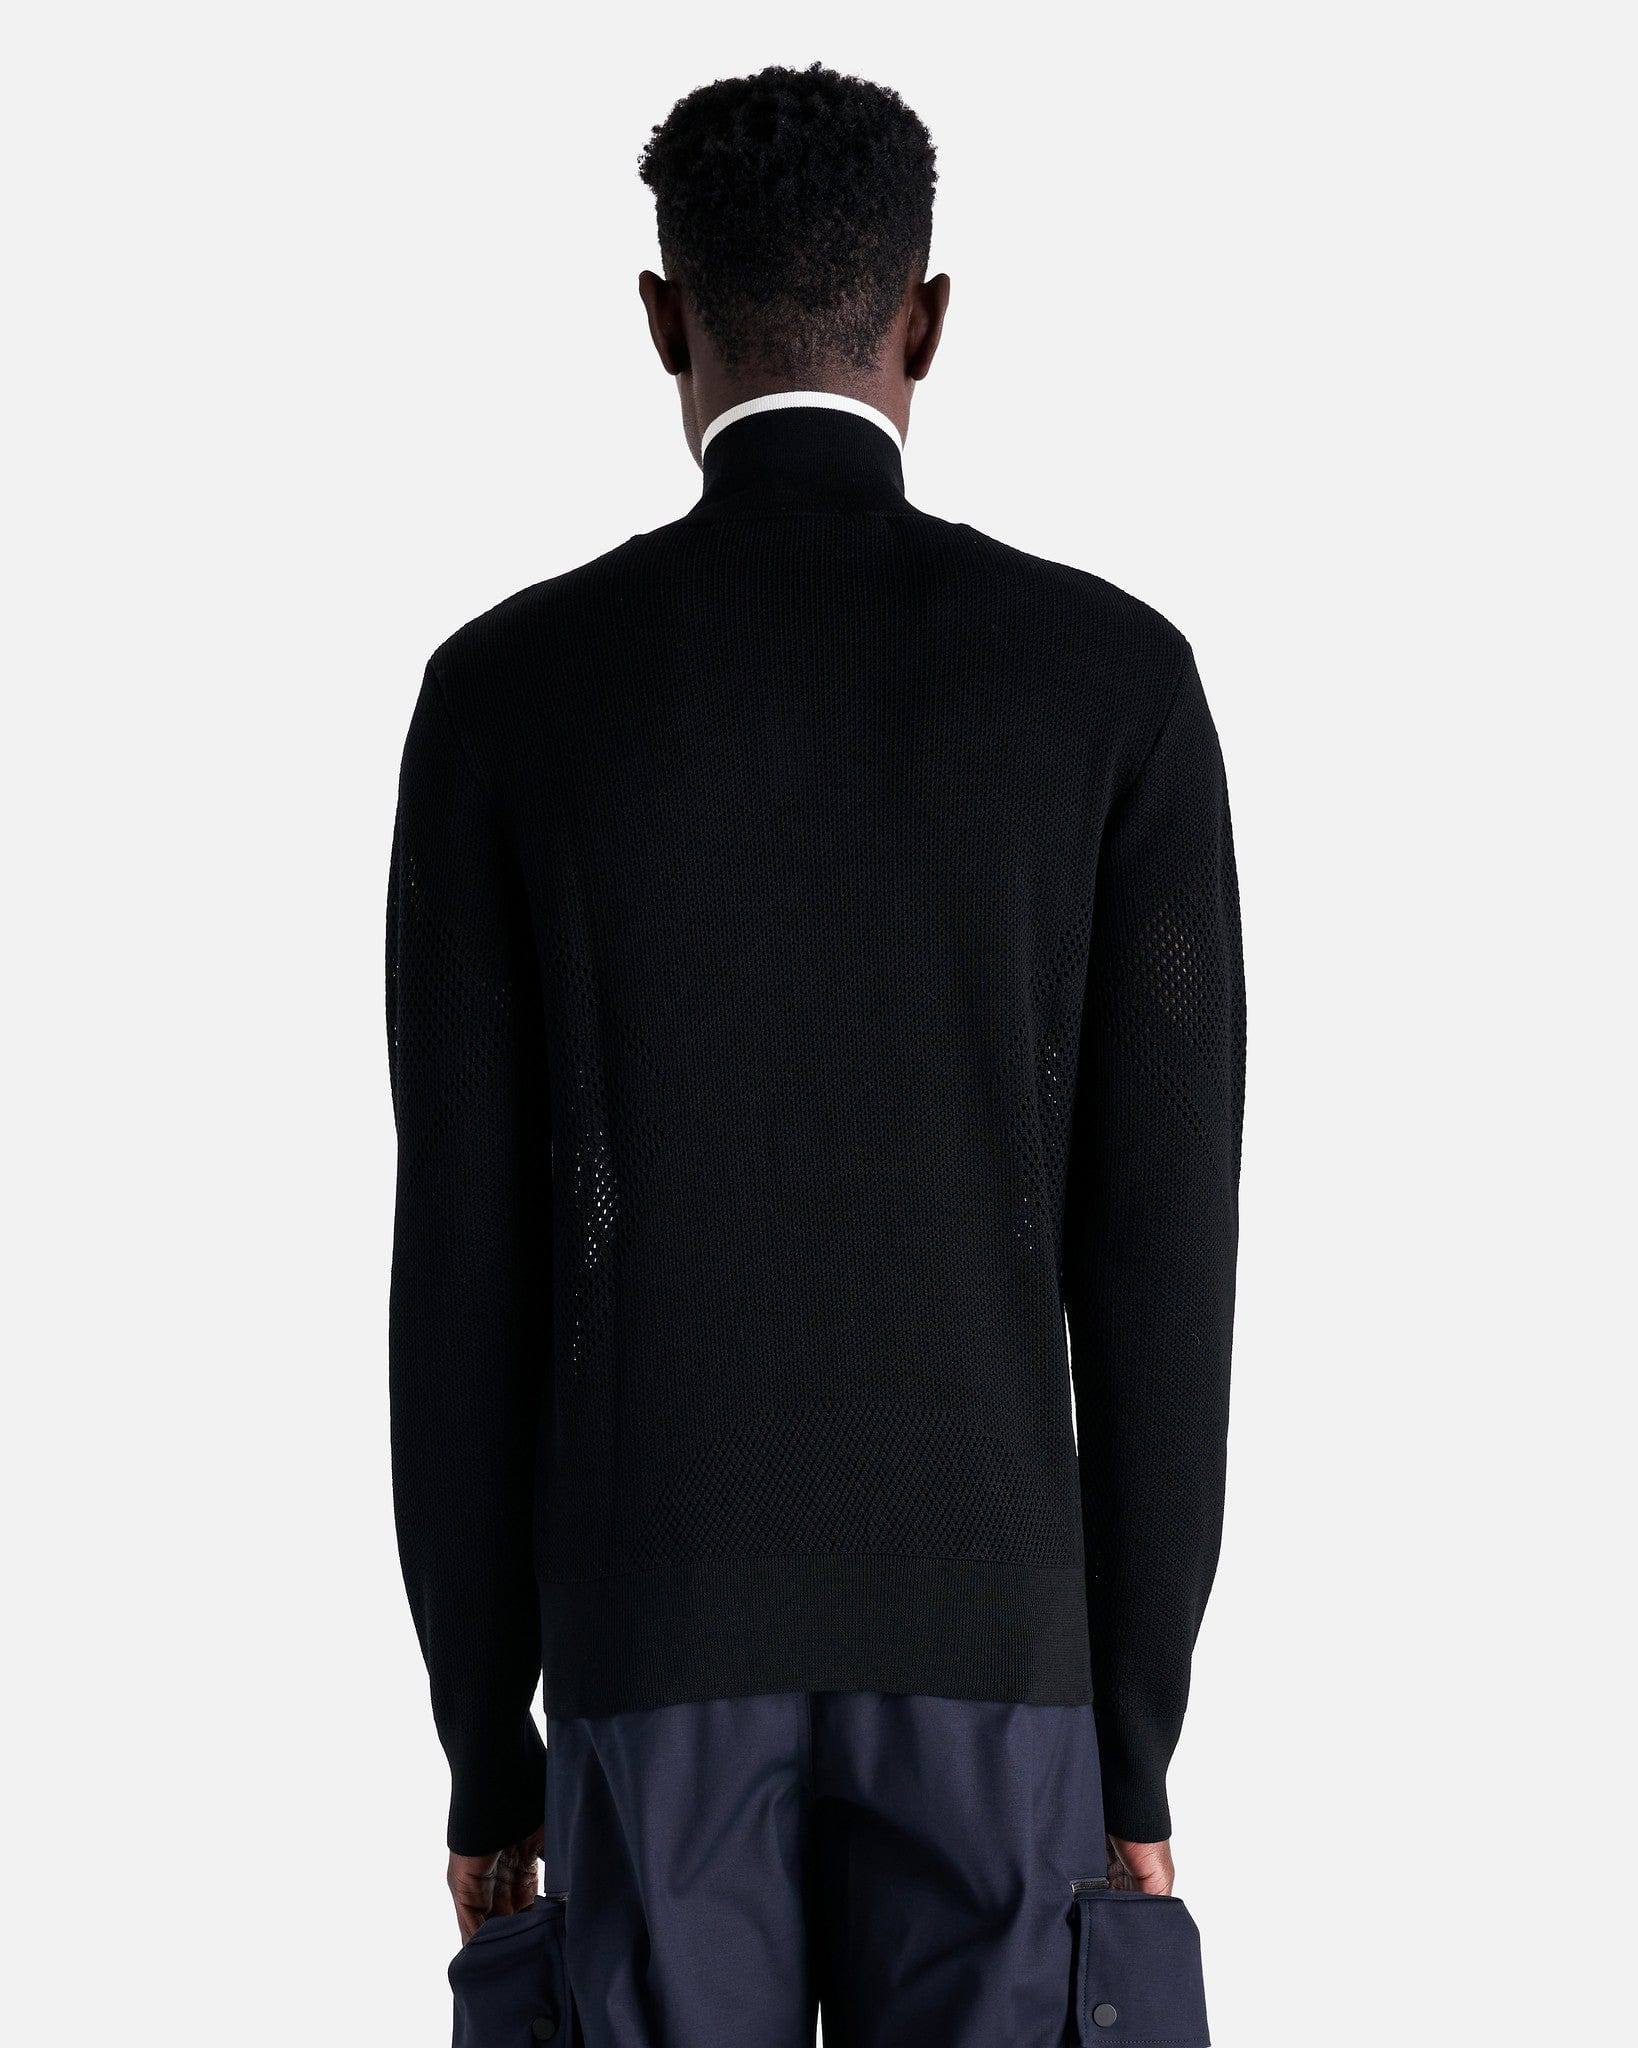 Botter Men's Sweater Knitted Sneaker Upper Turtleneck in Black